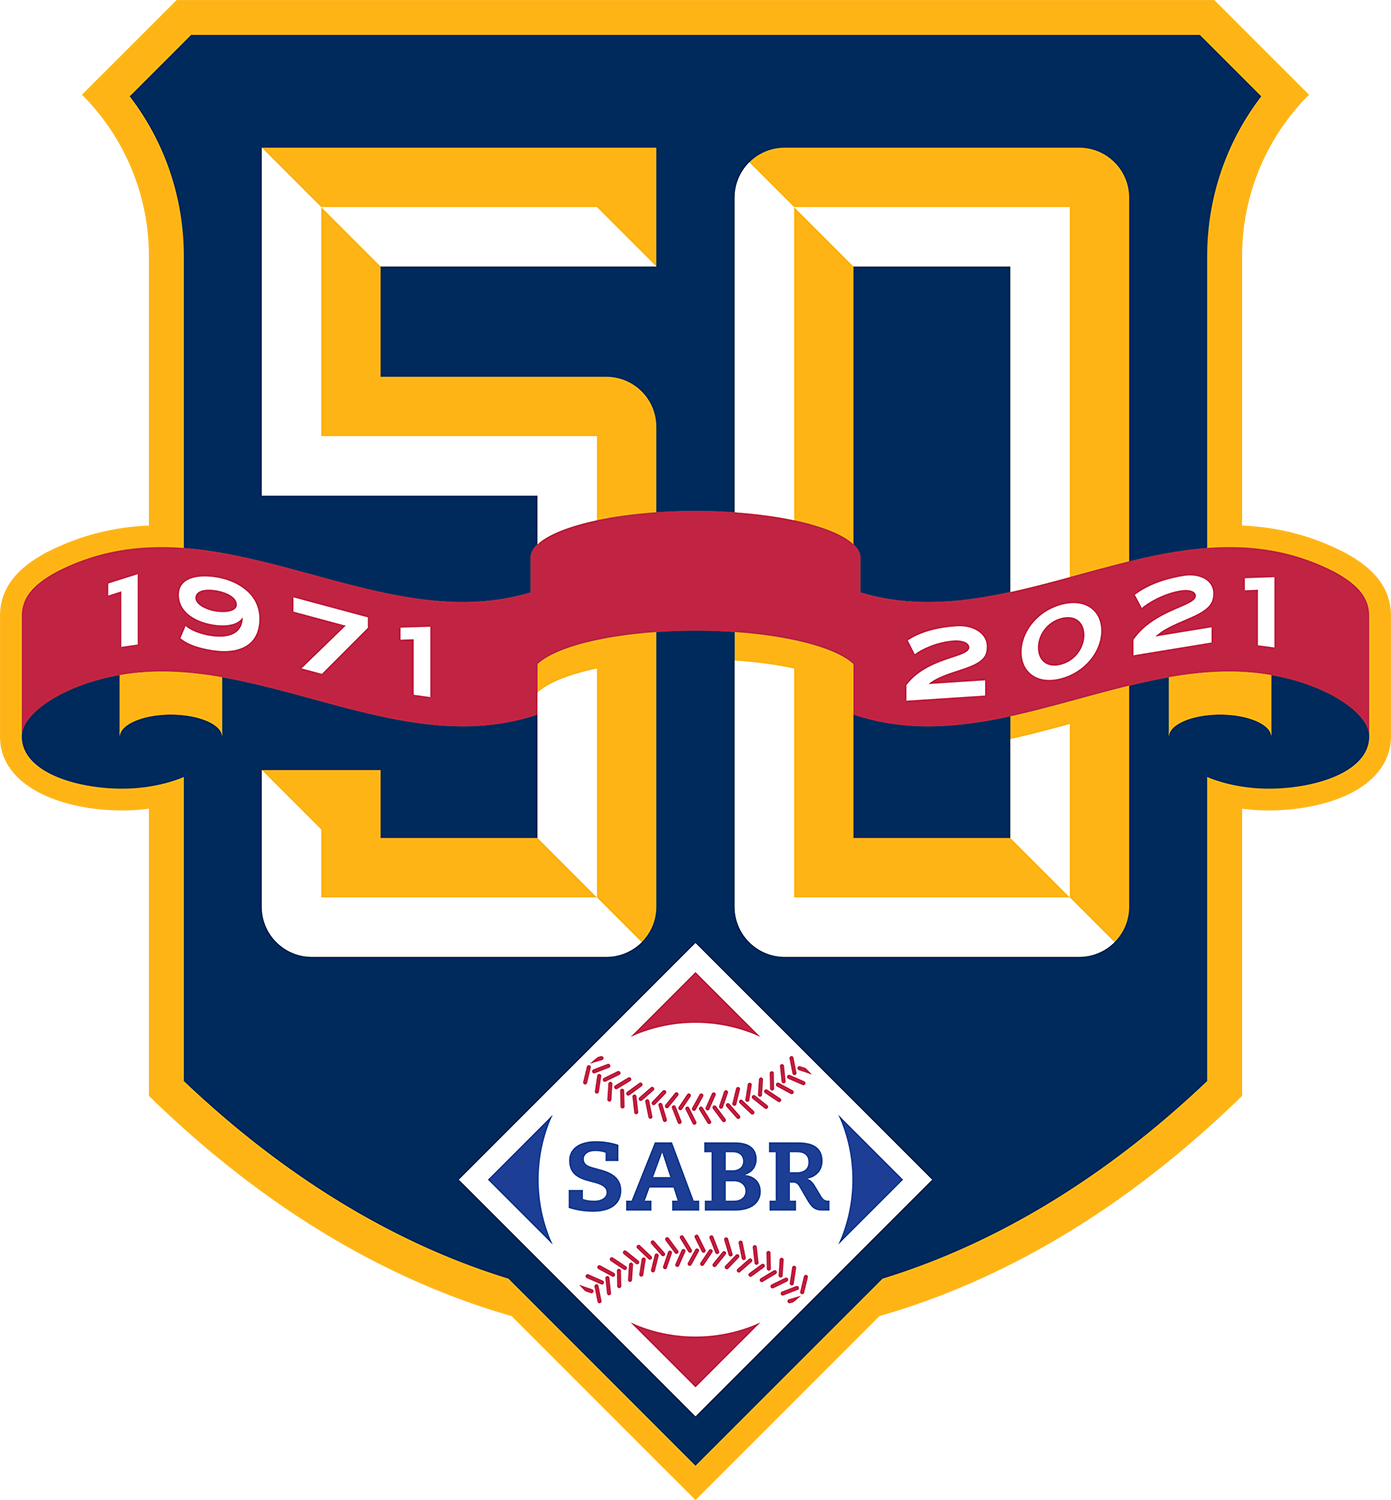 SABR 50th Anniversary logo